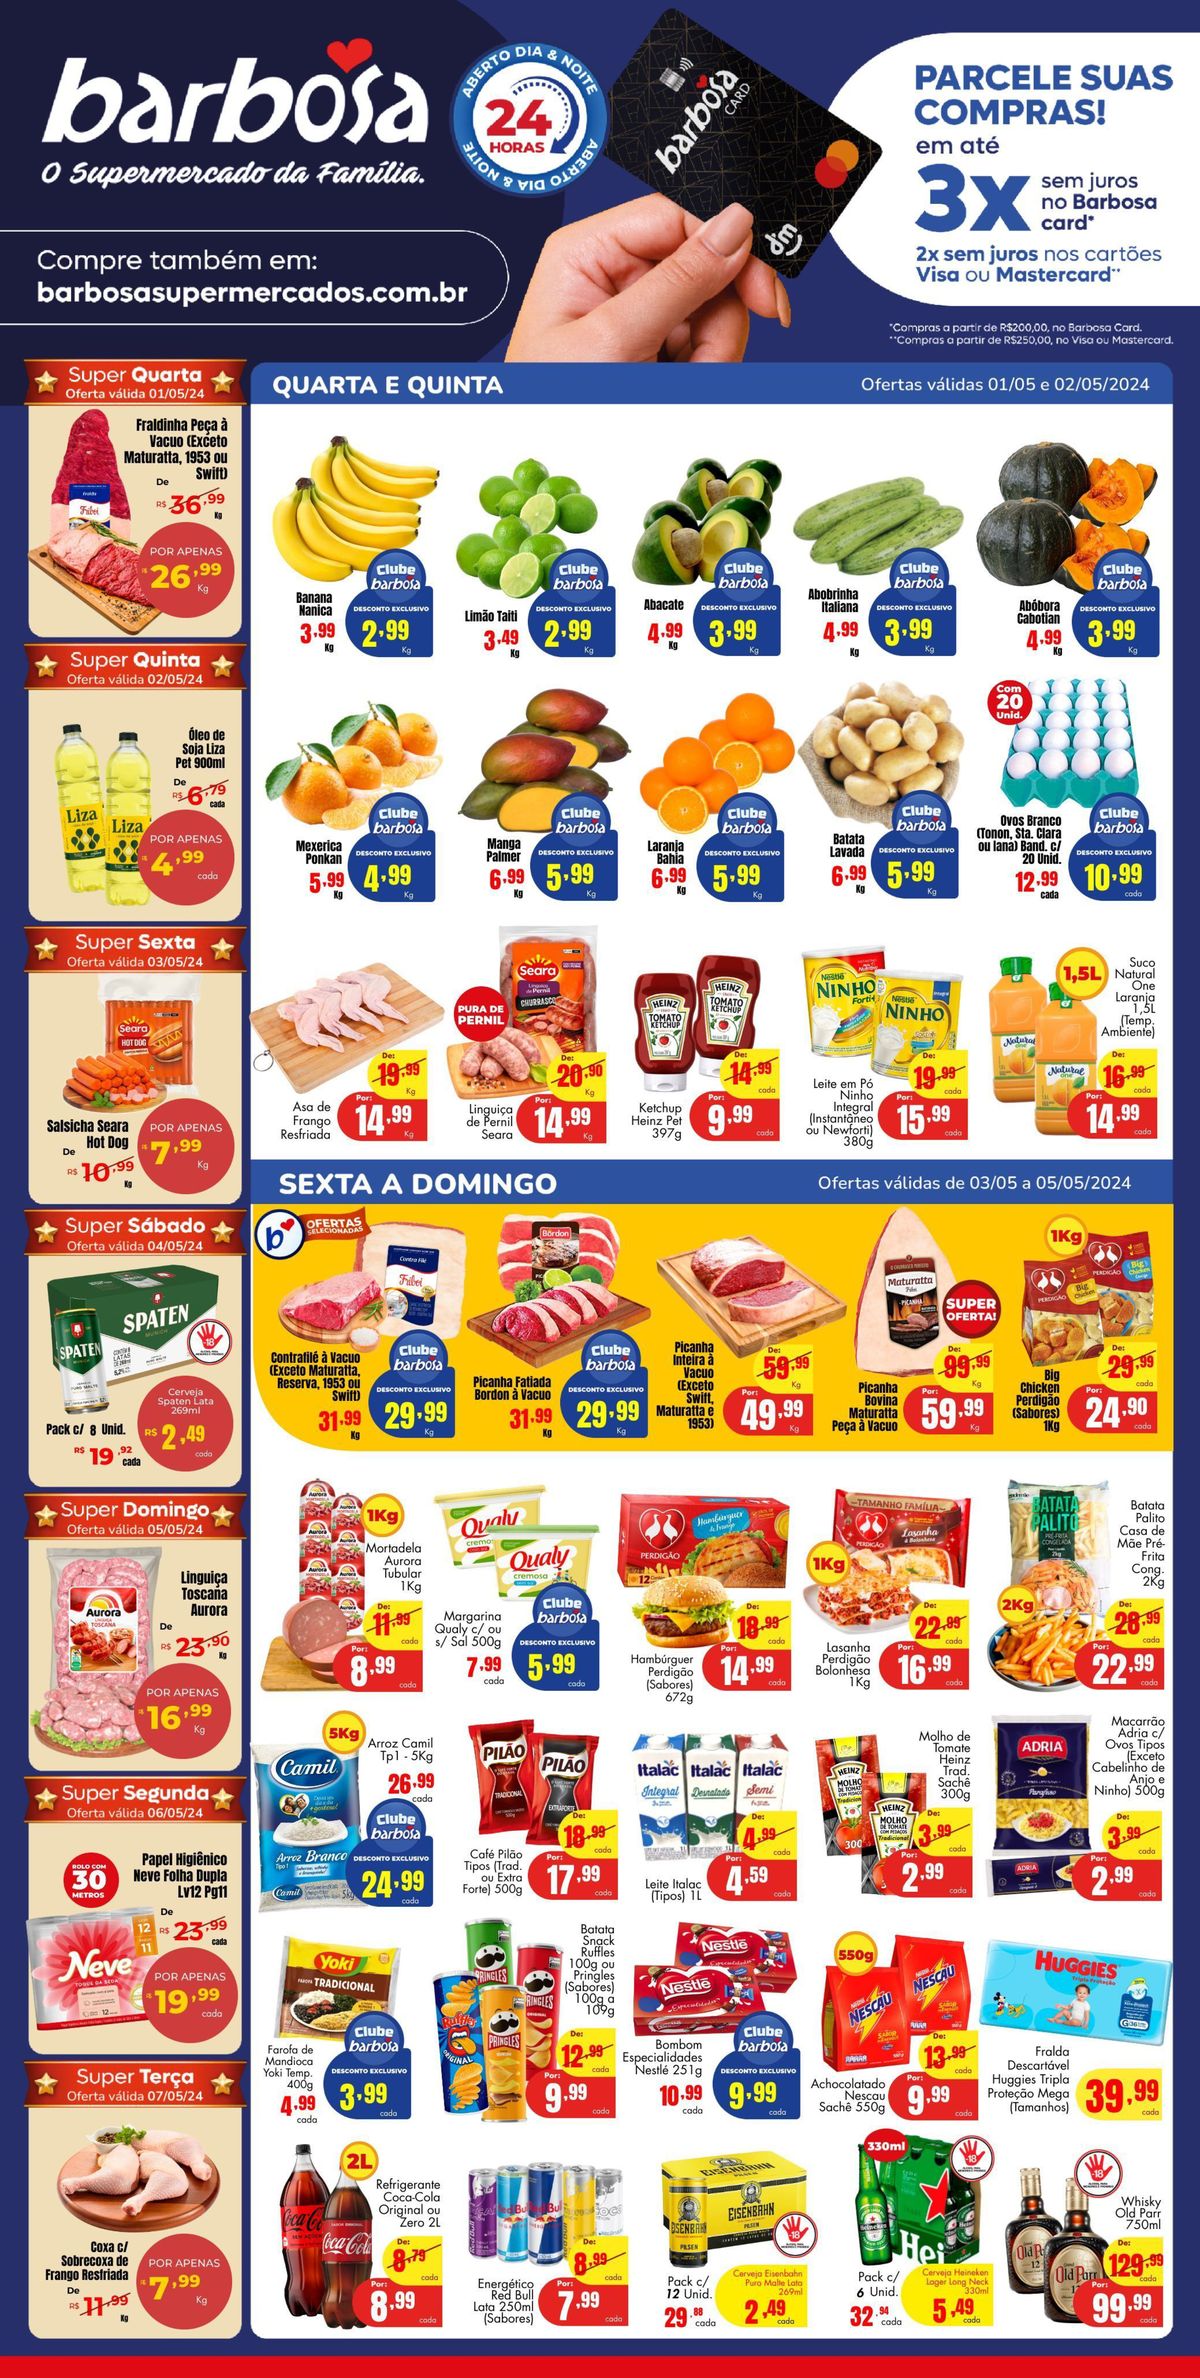 Ofertas Barbosa Supermercados - Promoção em produtos selecionados